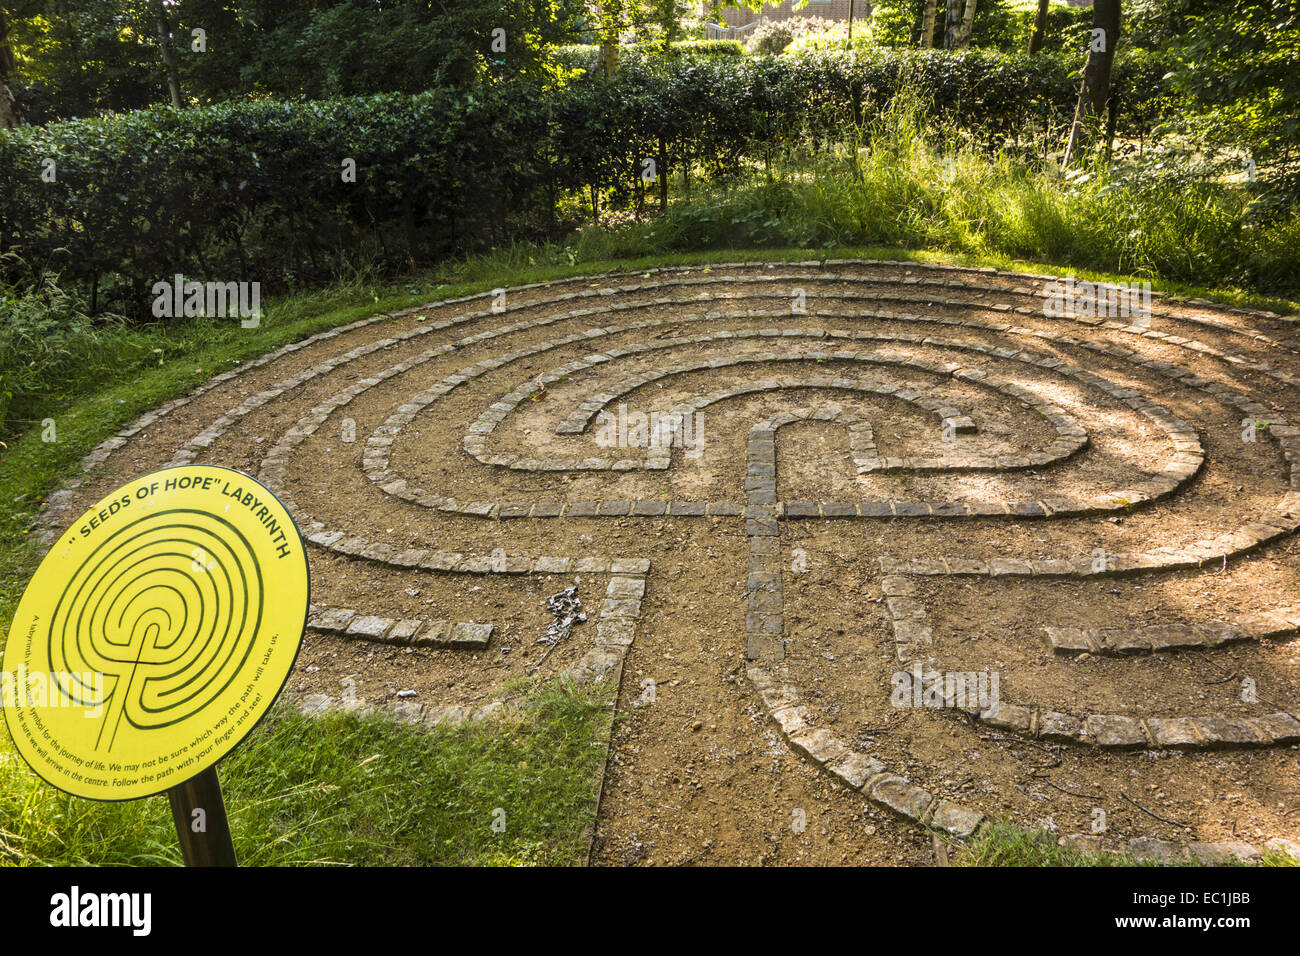 Samen der Hoffnung Labyrinth, Guildford Kathedrale. "Ein Symbol für die Reise des Lebens". Im Kinder Garten von Guildford Kathedrale; Stockfoto